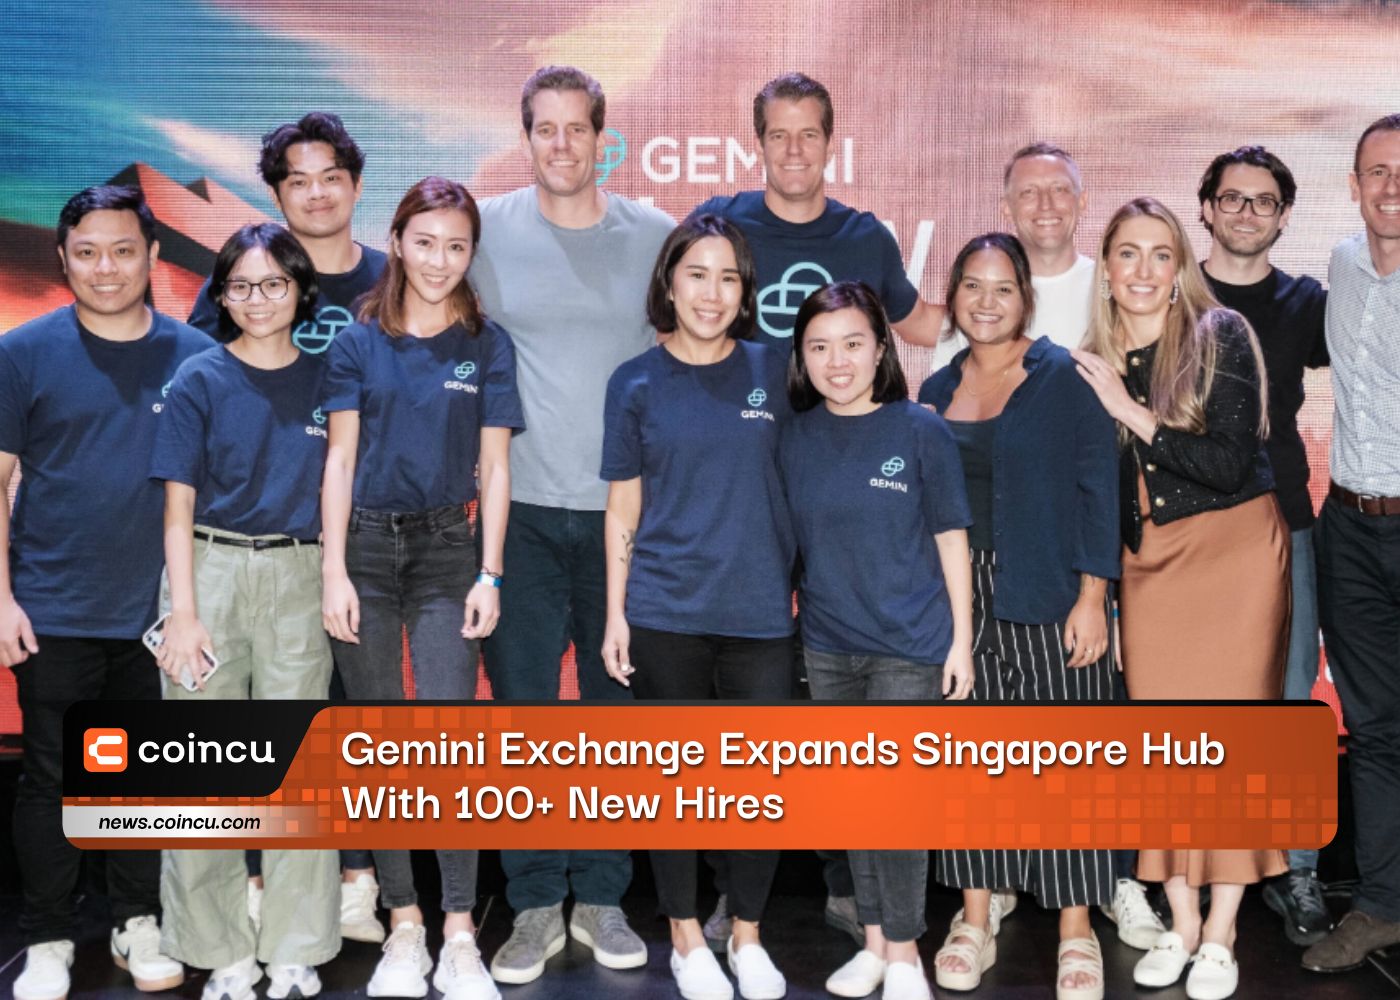 Gemini Exchange étend son hub de Singapour avec plus de 100 nouvelles recrues